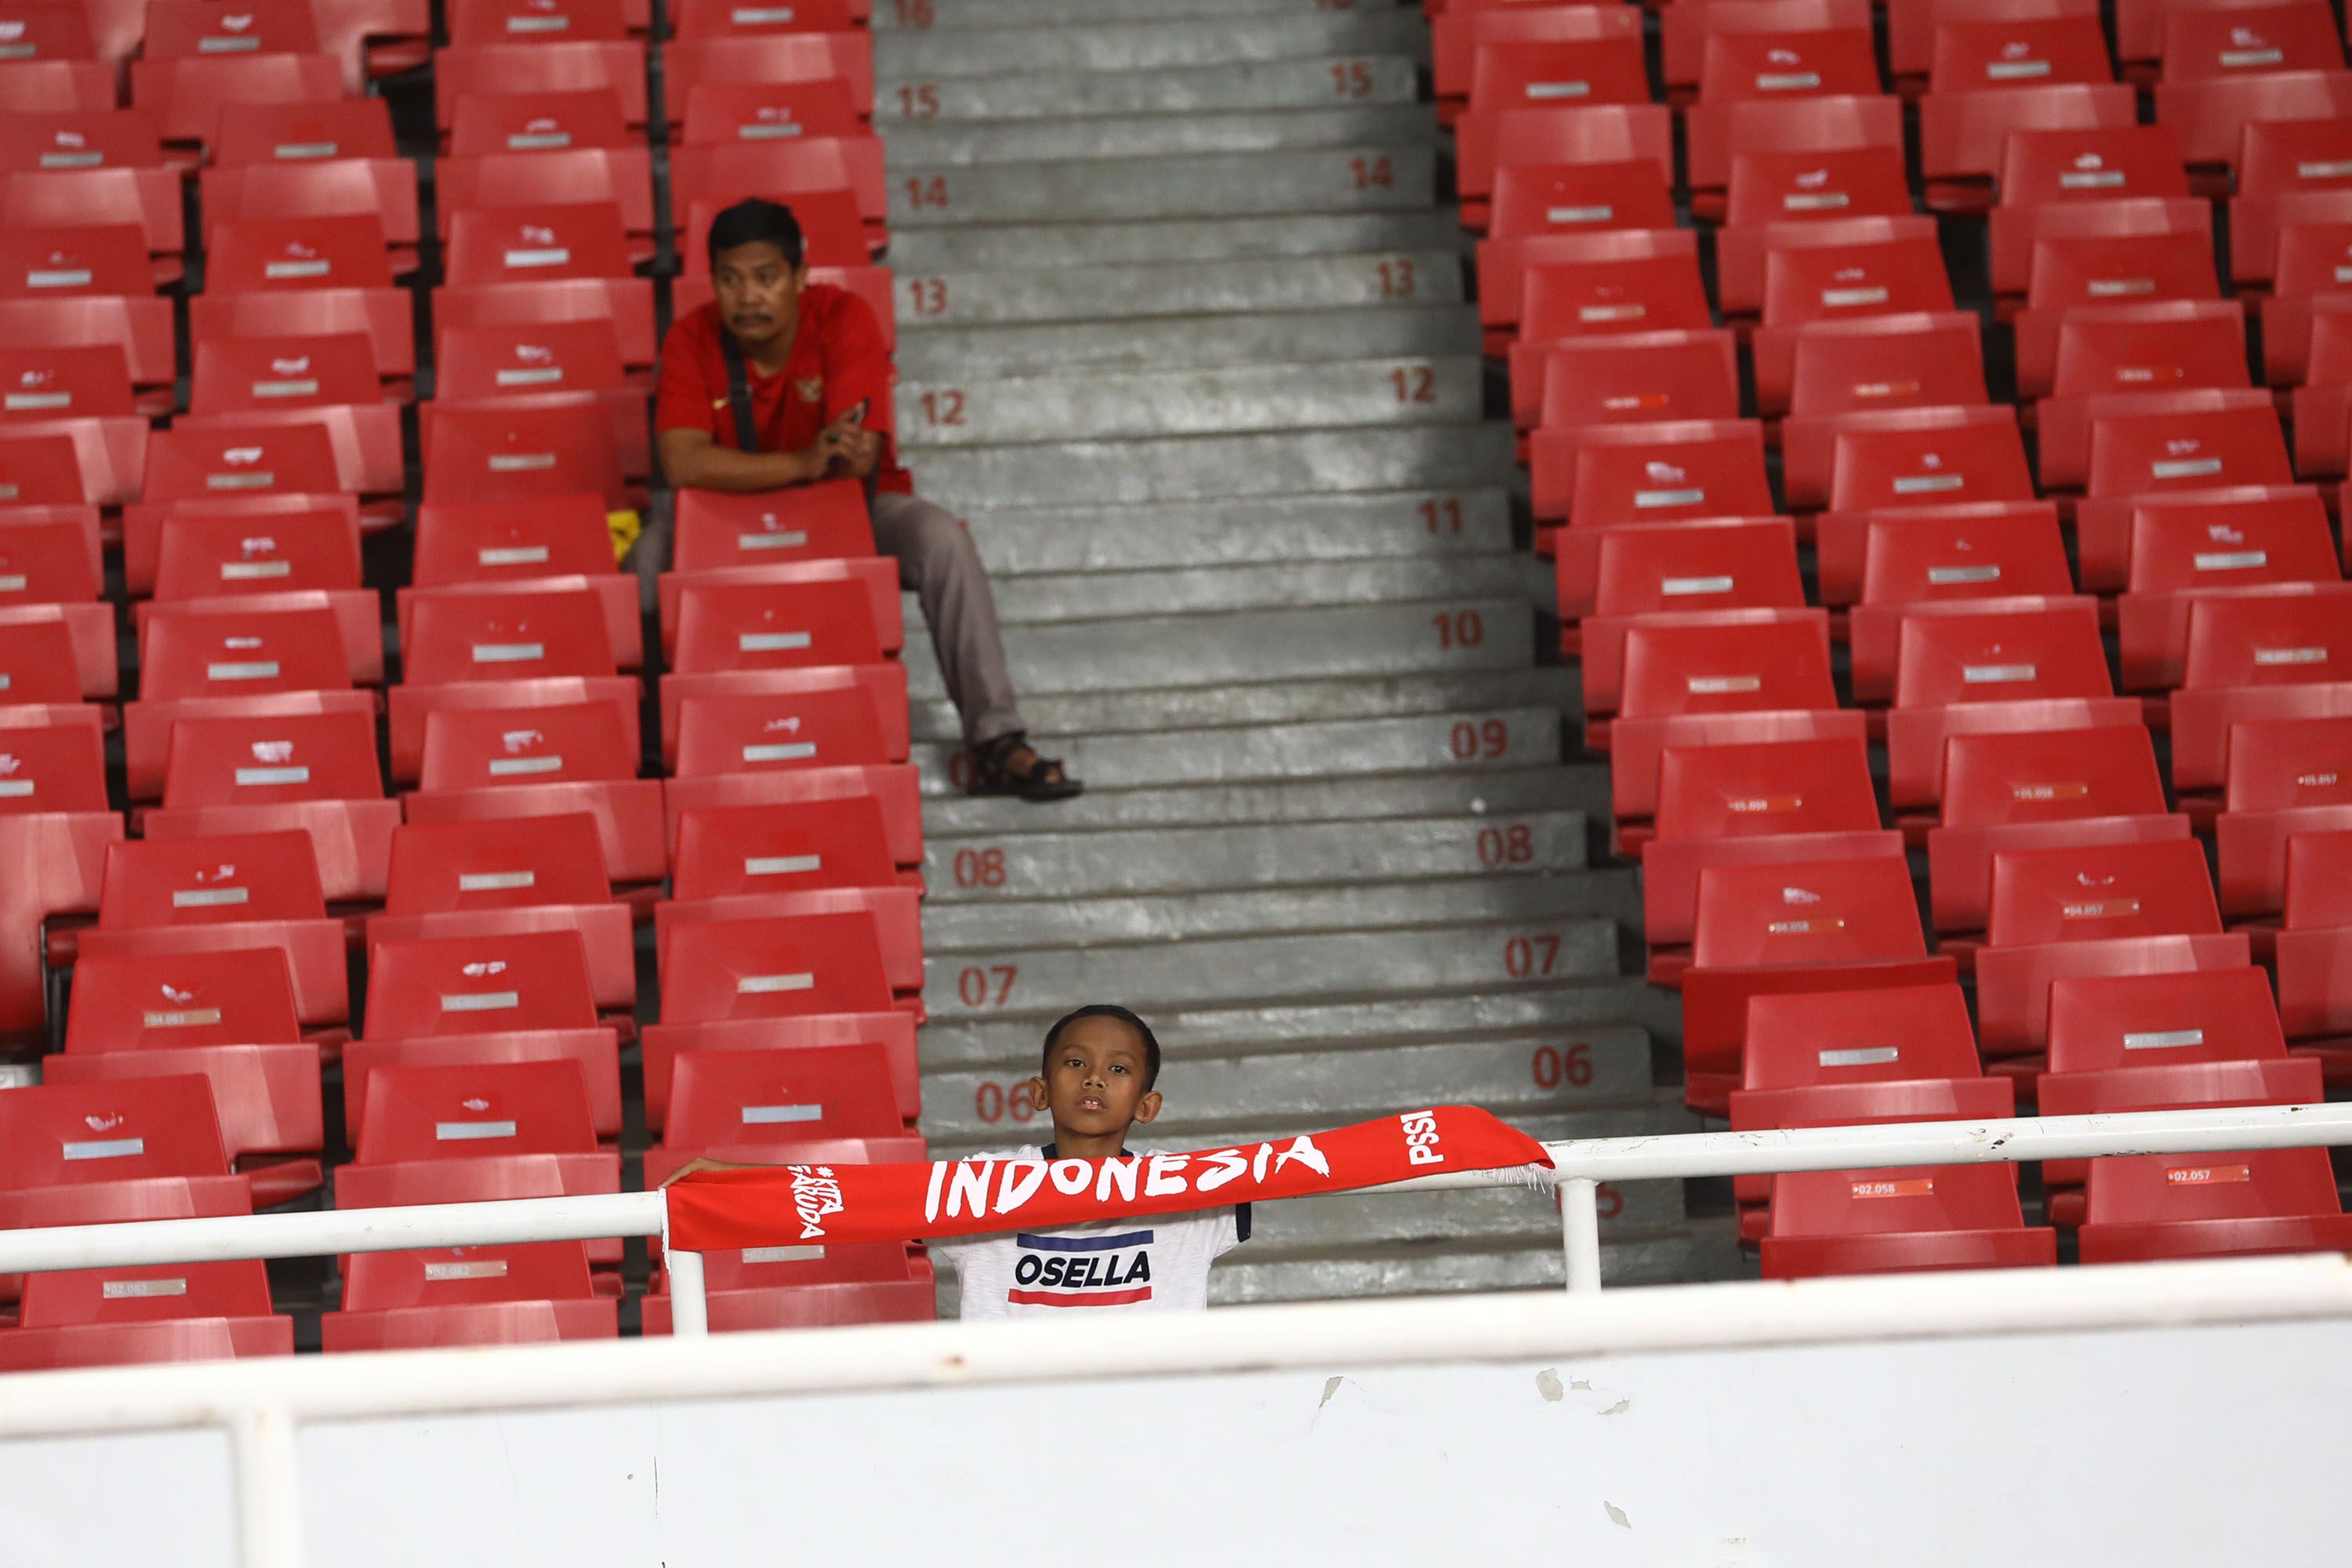 Suasana suporter Indonesia saat Timnas Indonesia melawan Timnas Thailand pada ajang Kualifikasi Piala Dunia Qatar 2022 di Stadion Utama Gelora Bung Karno (SUGBK), Senayan, Jakarta Pusat, Selasa (10/9/2019). Pada pertandingan tersebut Timnas Indonesia kalah telak 0-3 dari Thailand. Tribunnews/Irwan R